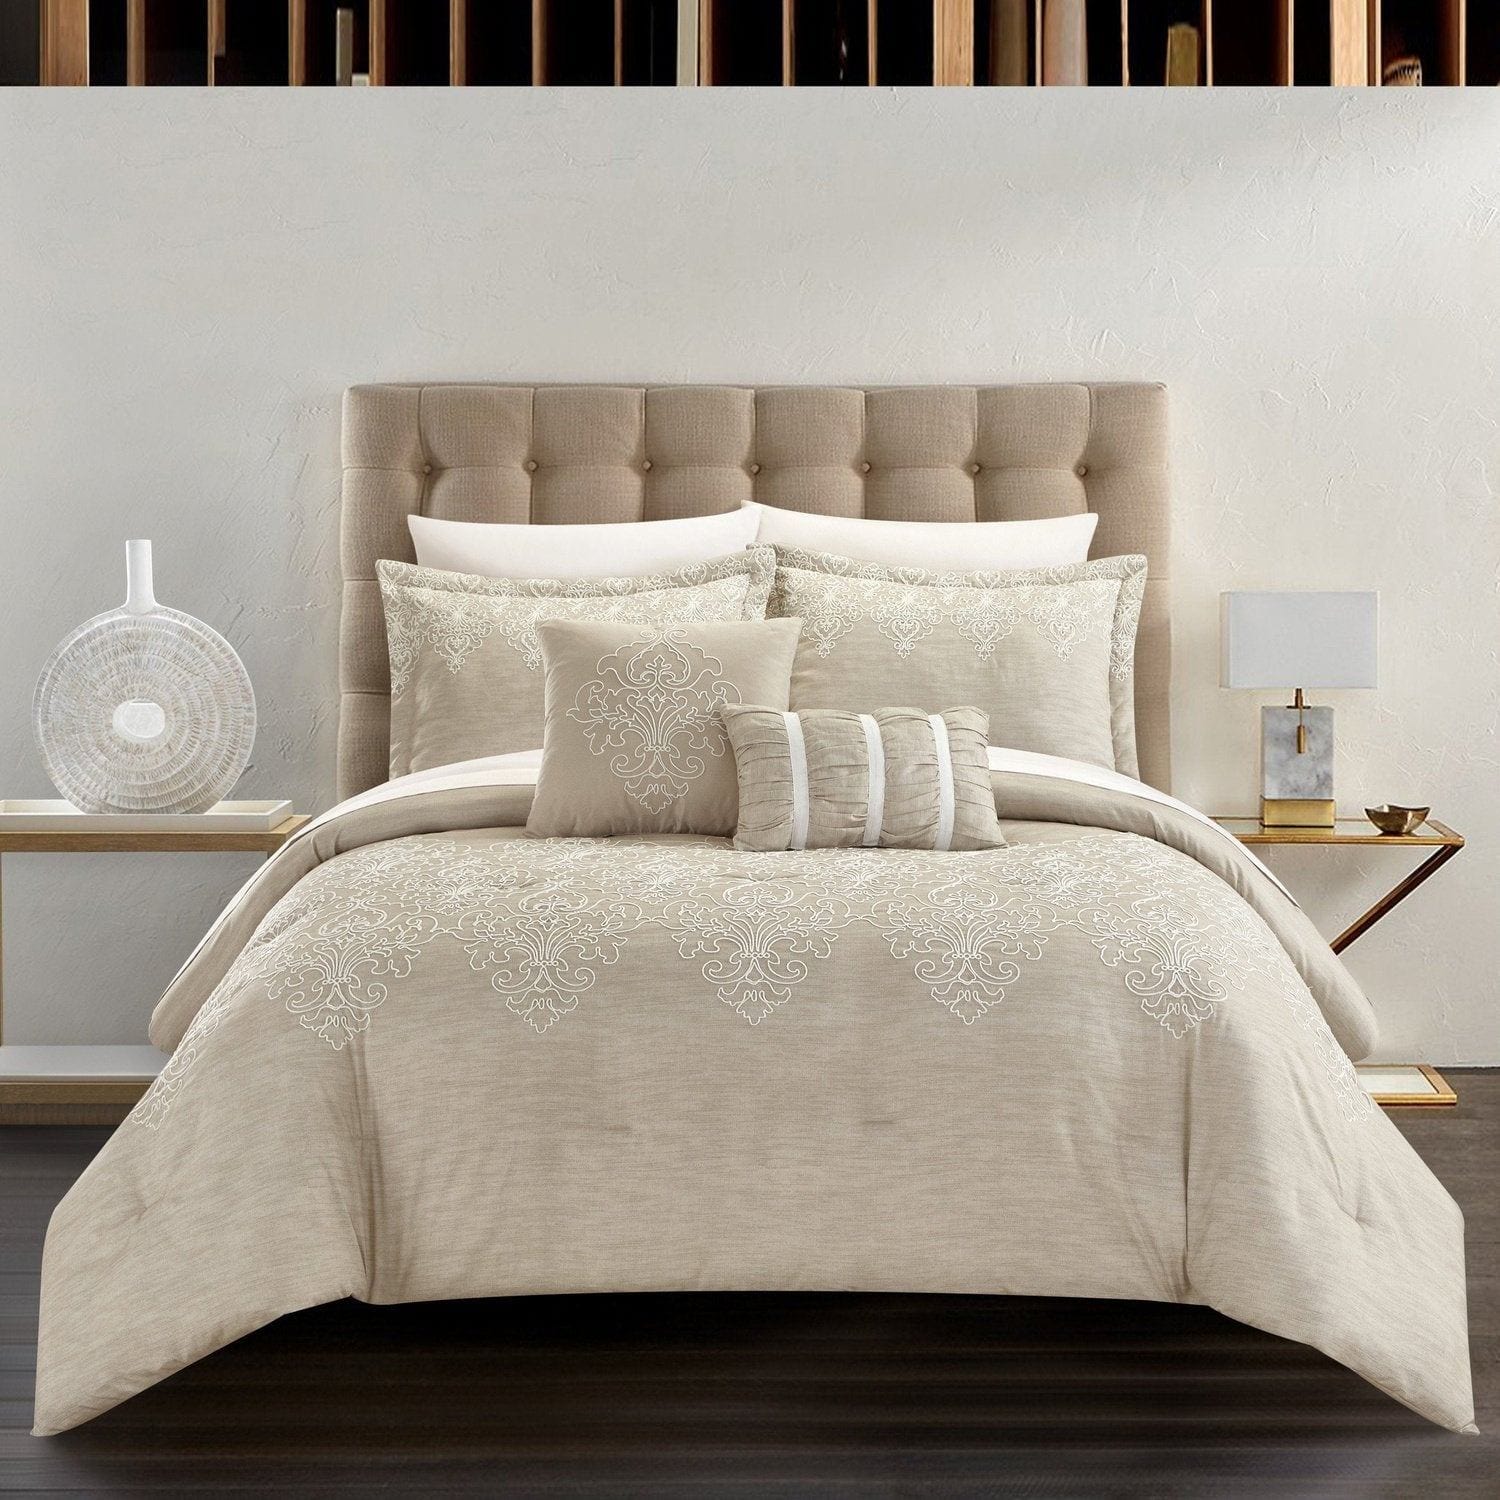 Chic Home Adaline Piece Comforter Set Embroidered Design Bedding Decora